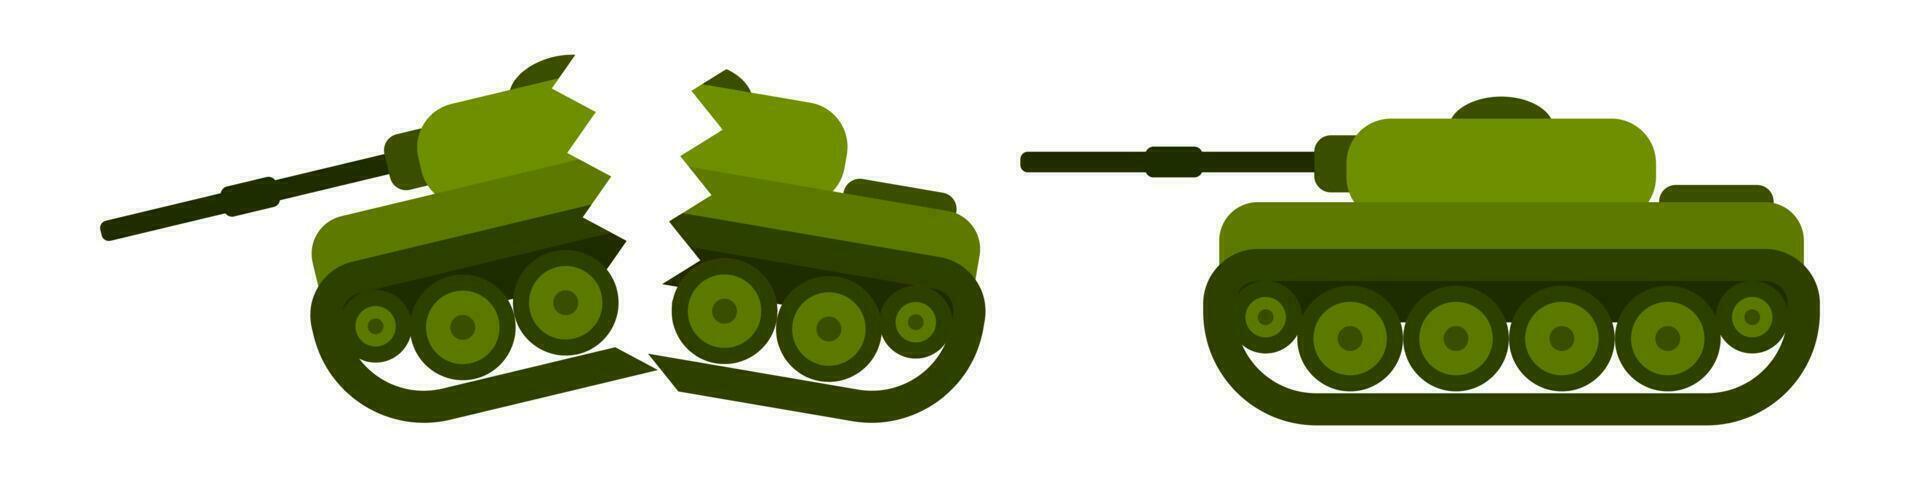 tanks in vlak stijl gebroken en geheel. vector beeld